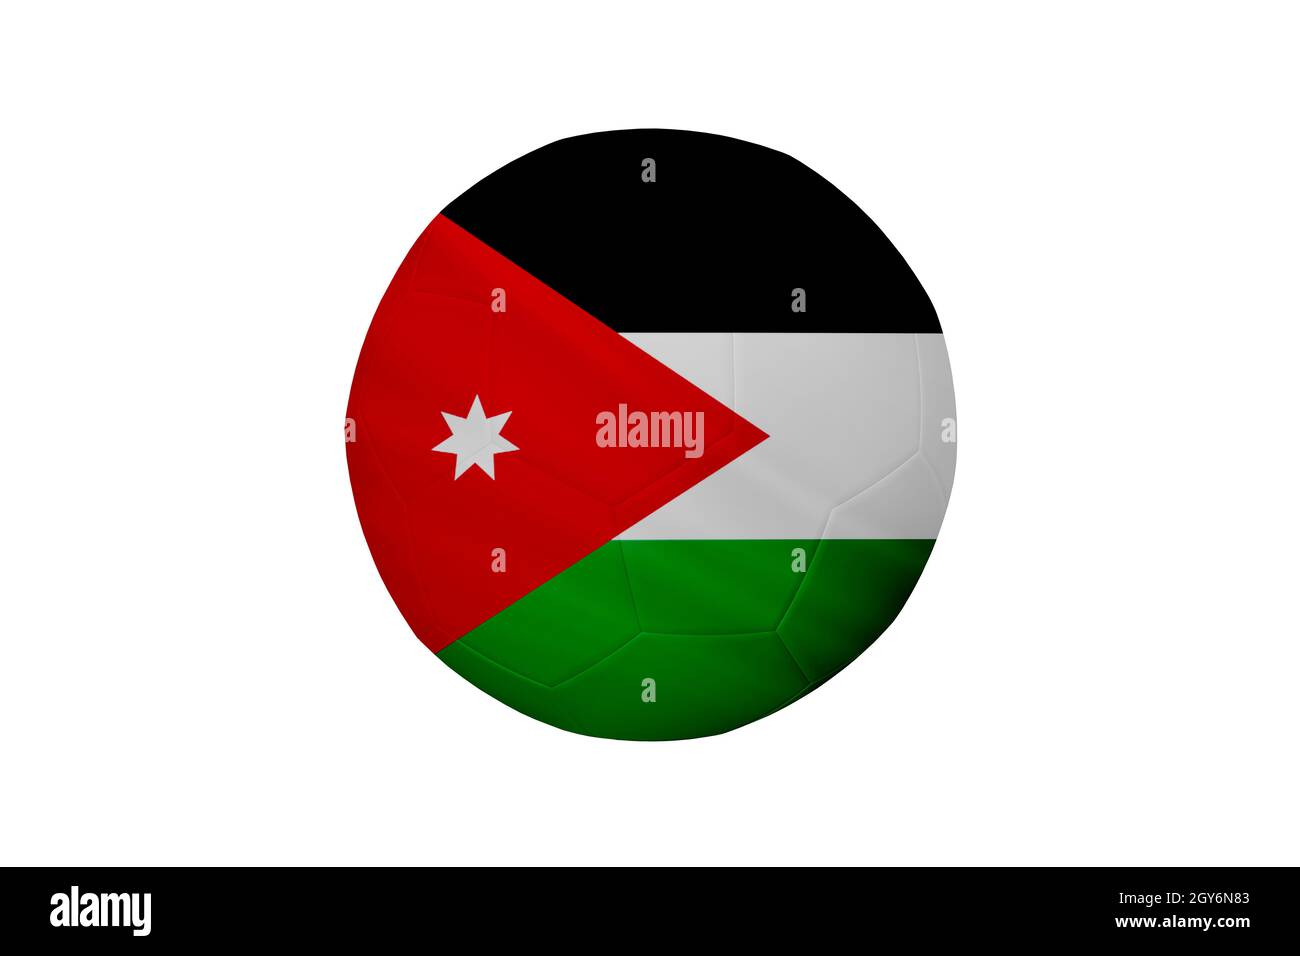 Fußball in den Farben der Jordan-Flagge isoliert auf weißem Hintergrund. In einem konzeptionellen Meisterschaftsbild, das Jordanien unterstützt. Stockfoto